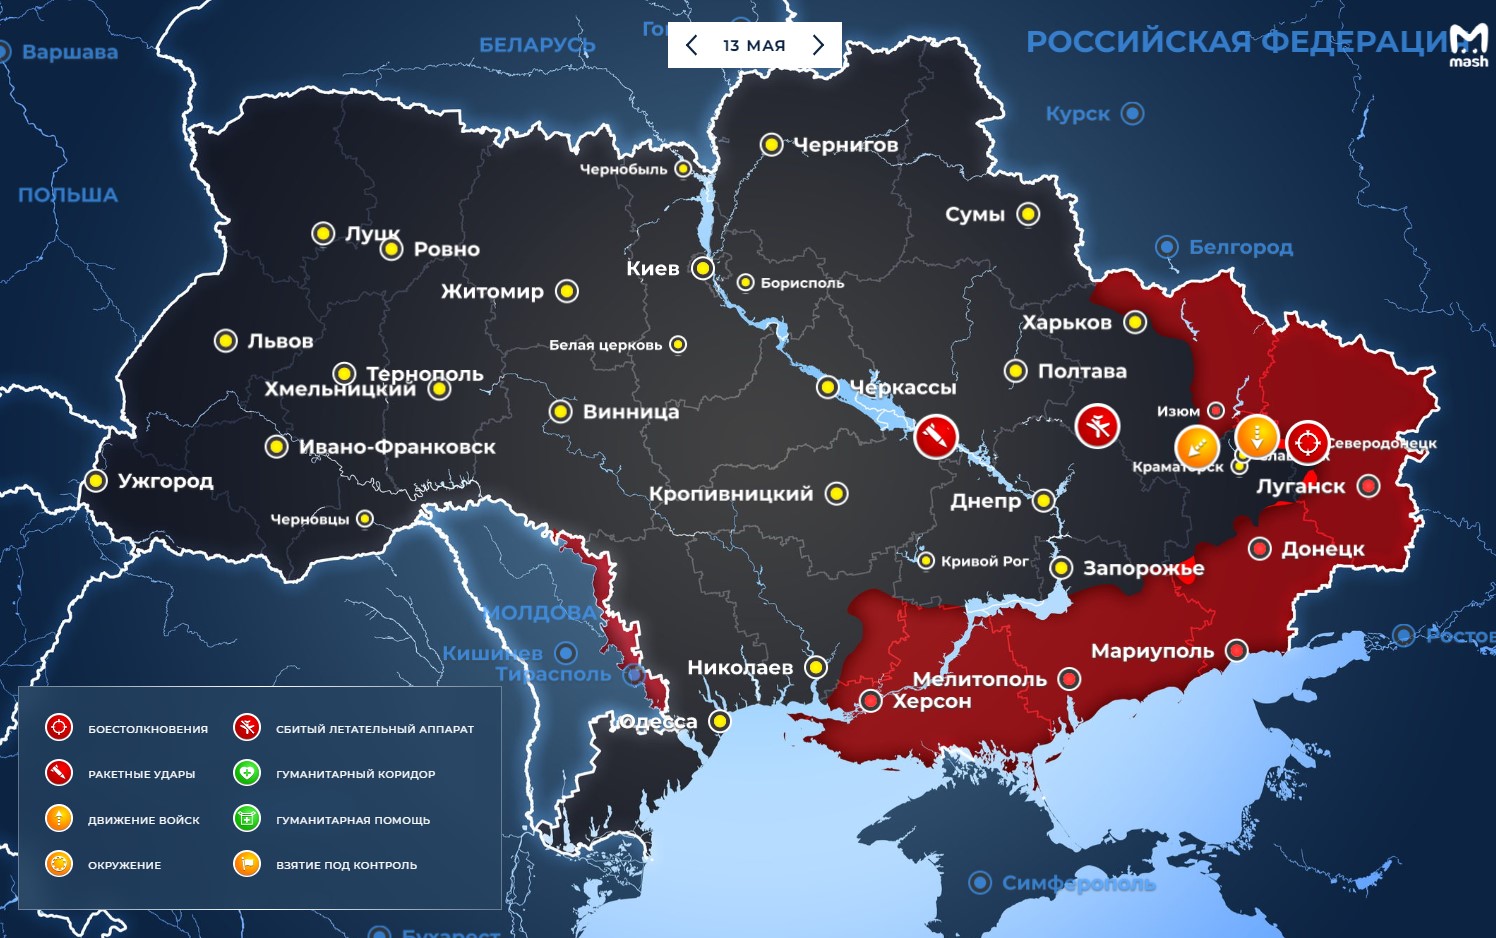 Обстановка на Украине и в Донбассе на сегодня 13 мая: обновленная карта боевых действий